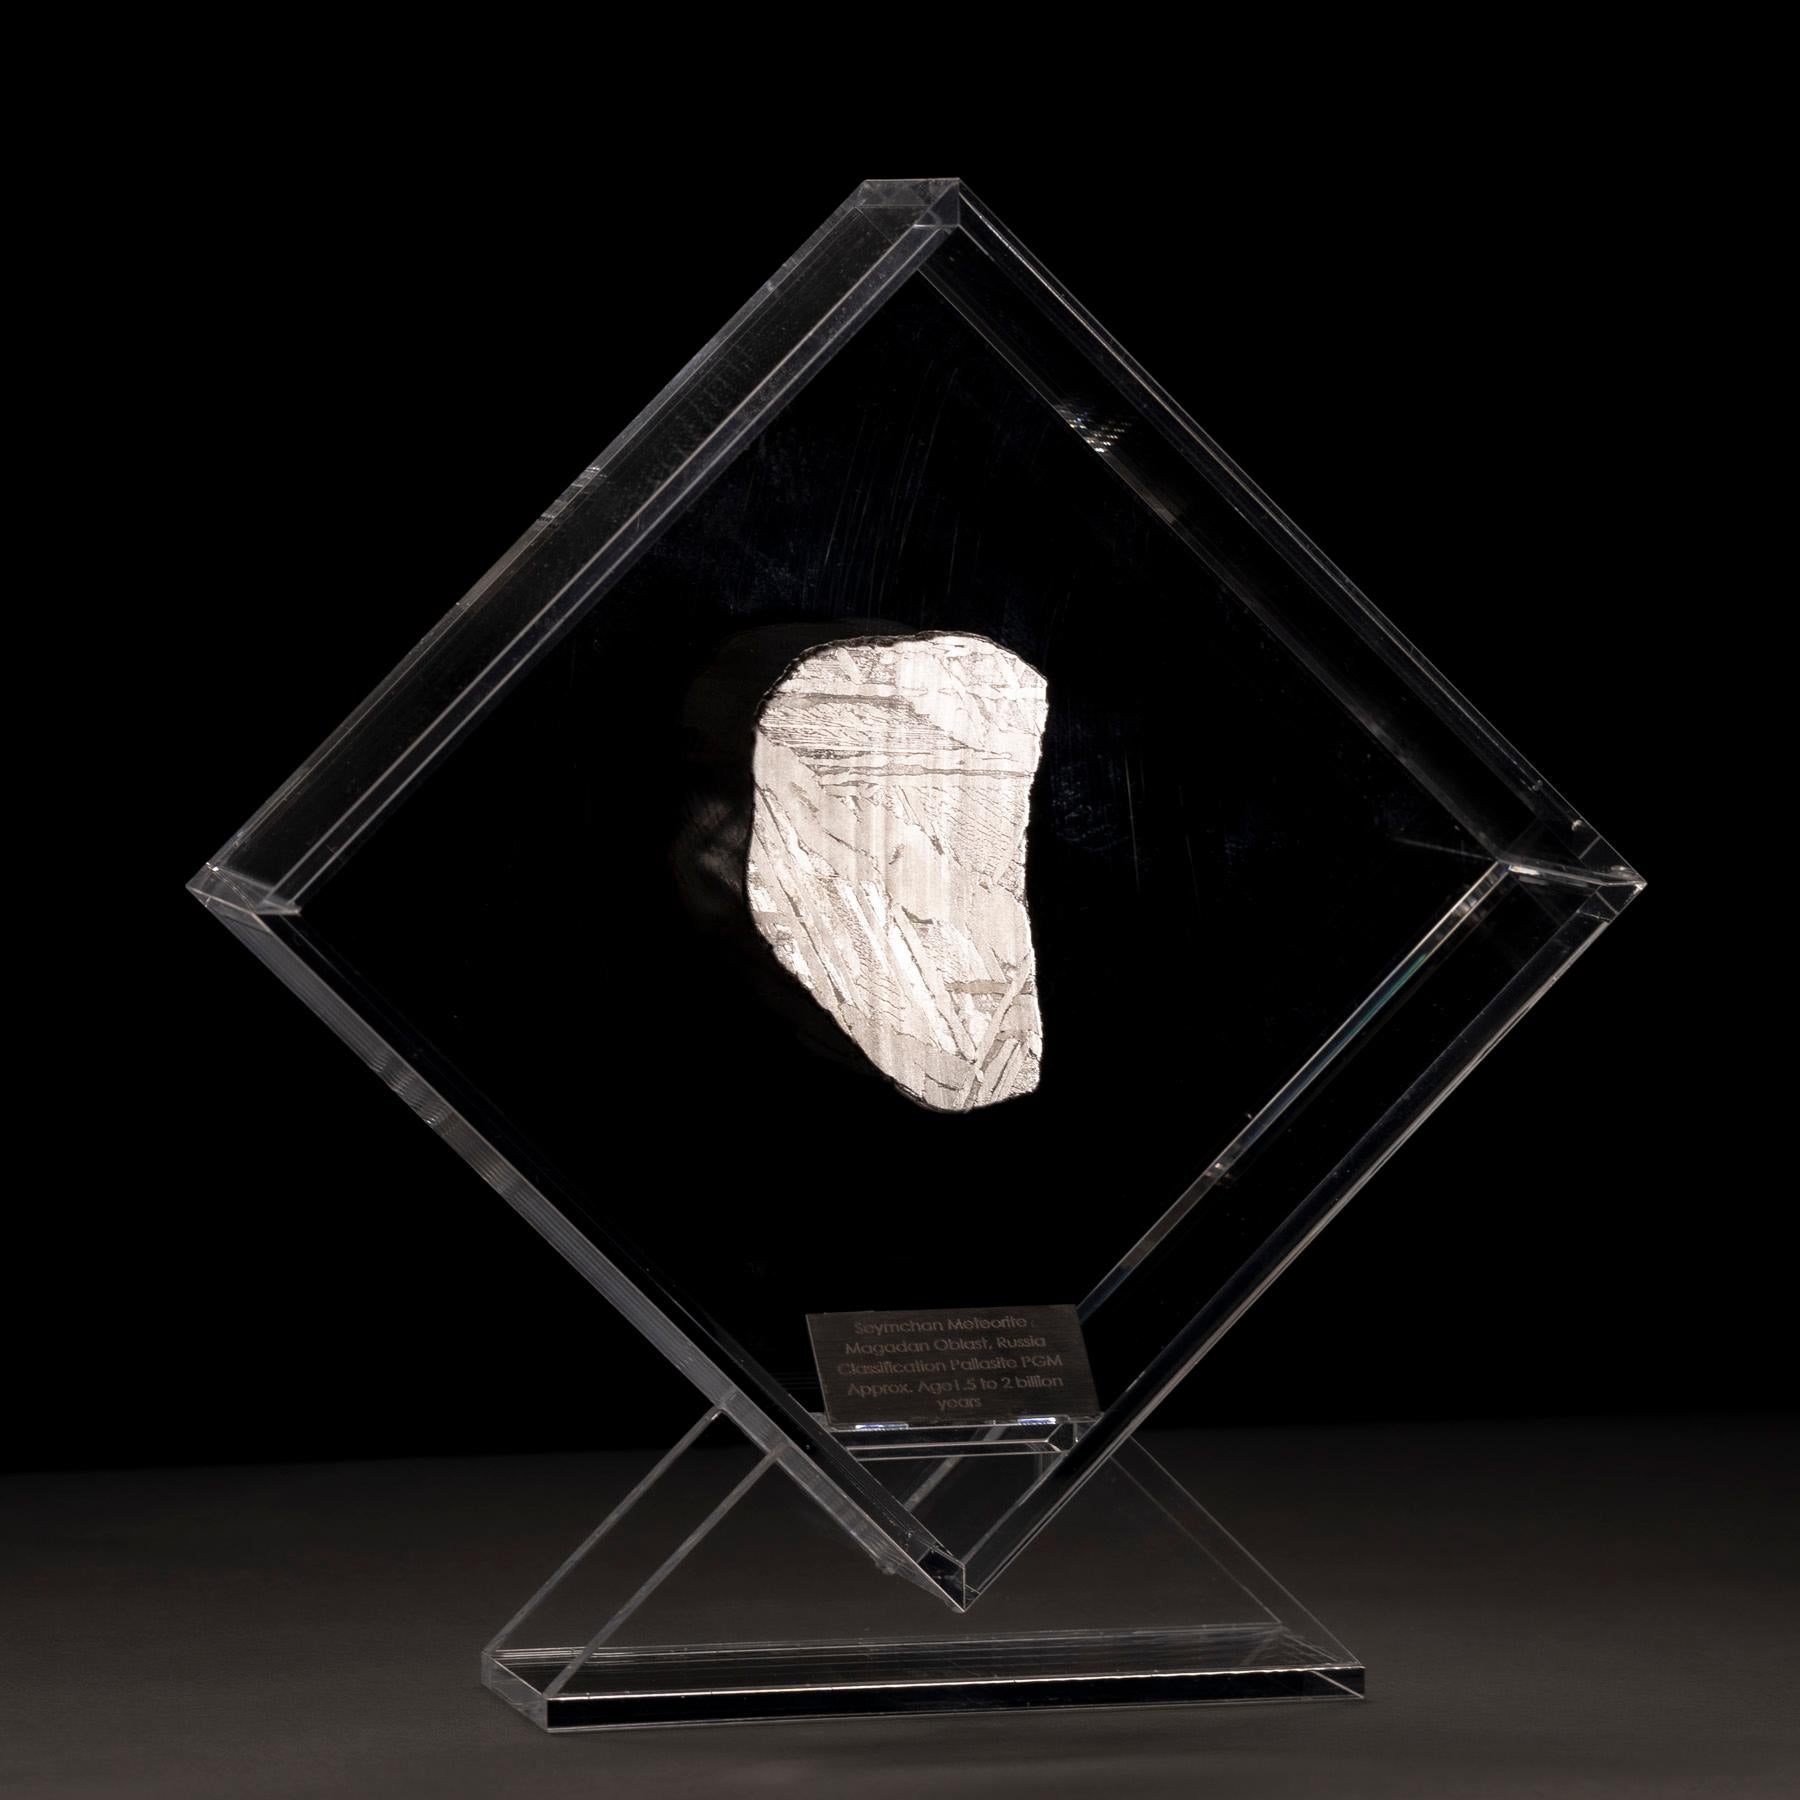 Mexican Original Design, Seymchan Meteorite in a Acrylic Display